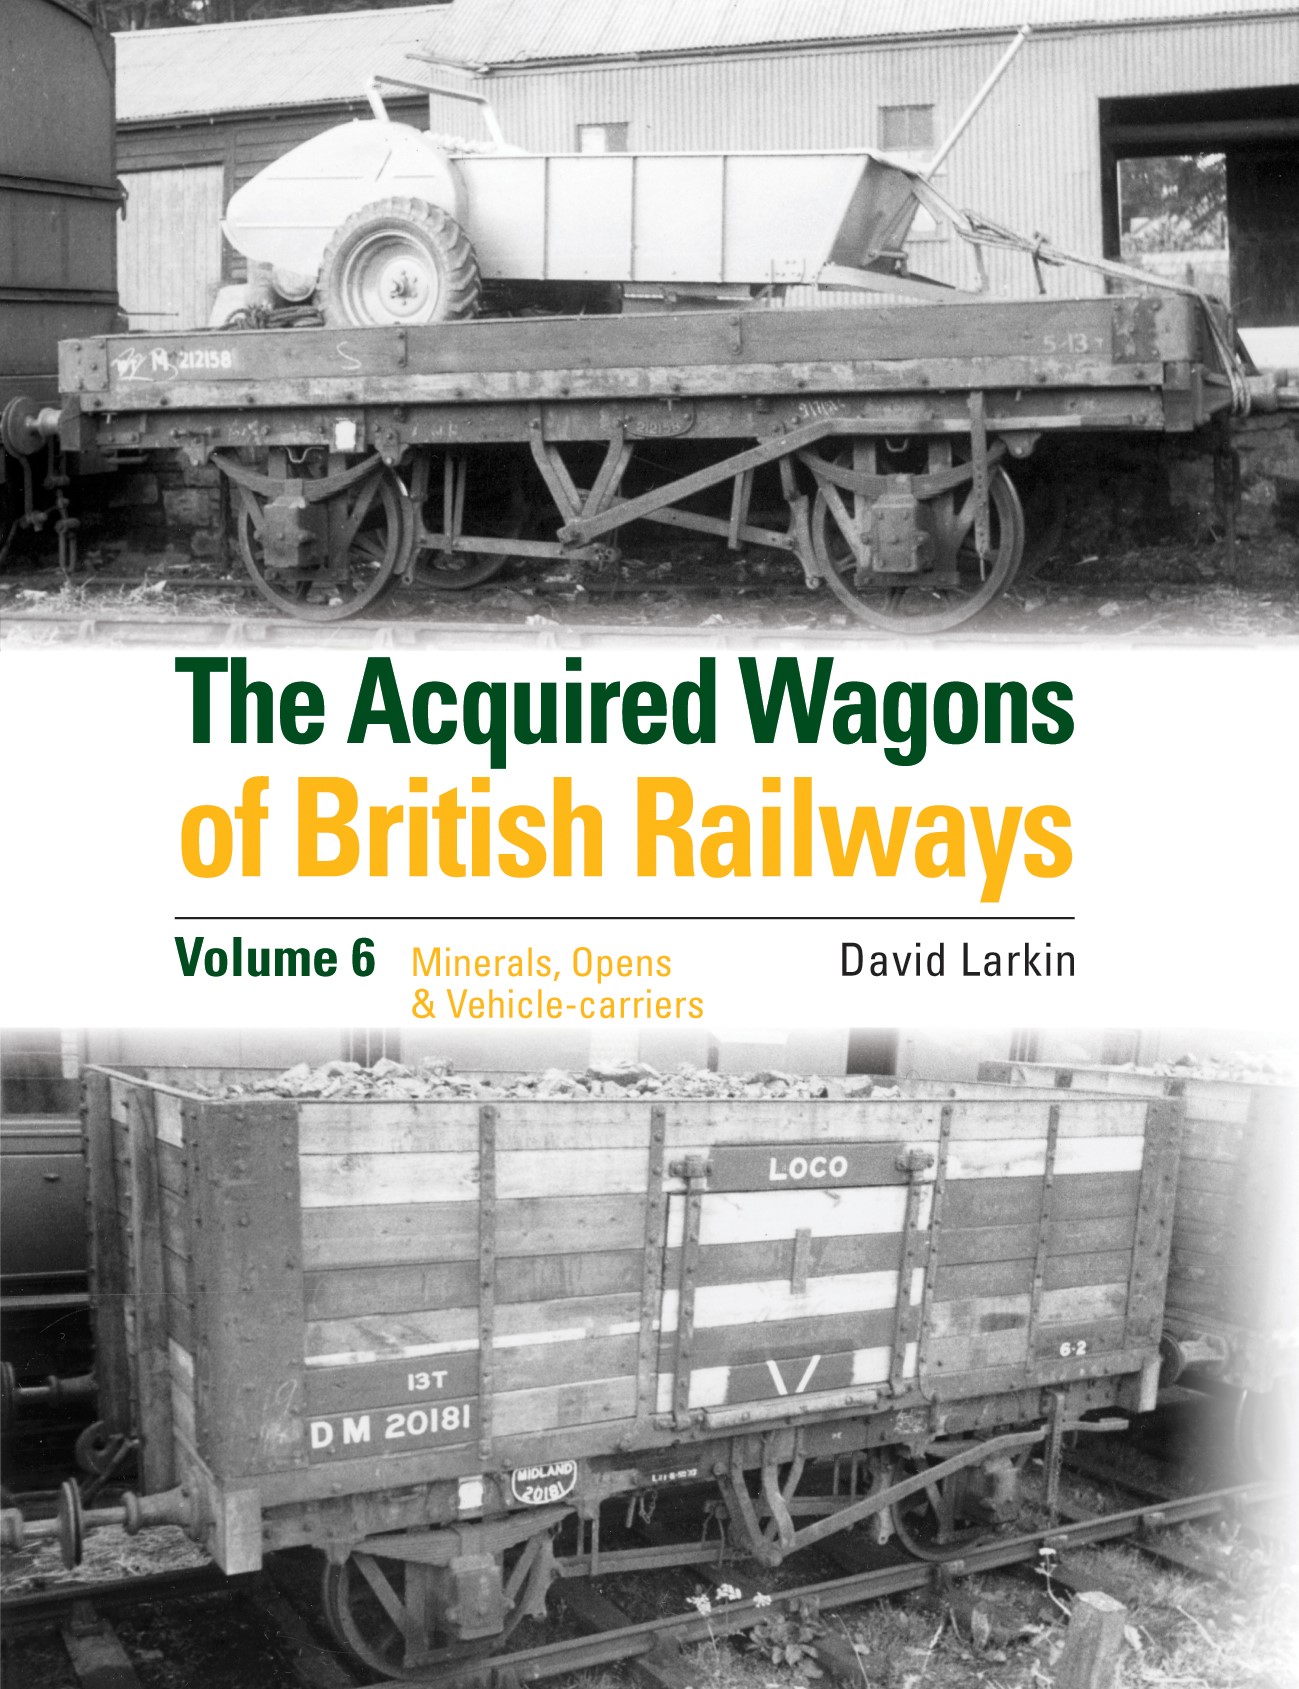 The Acquired Wagons of British Railways: Volume 6 